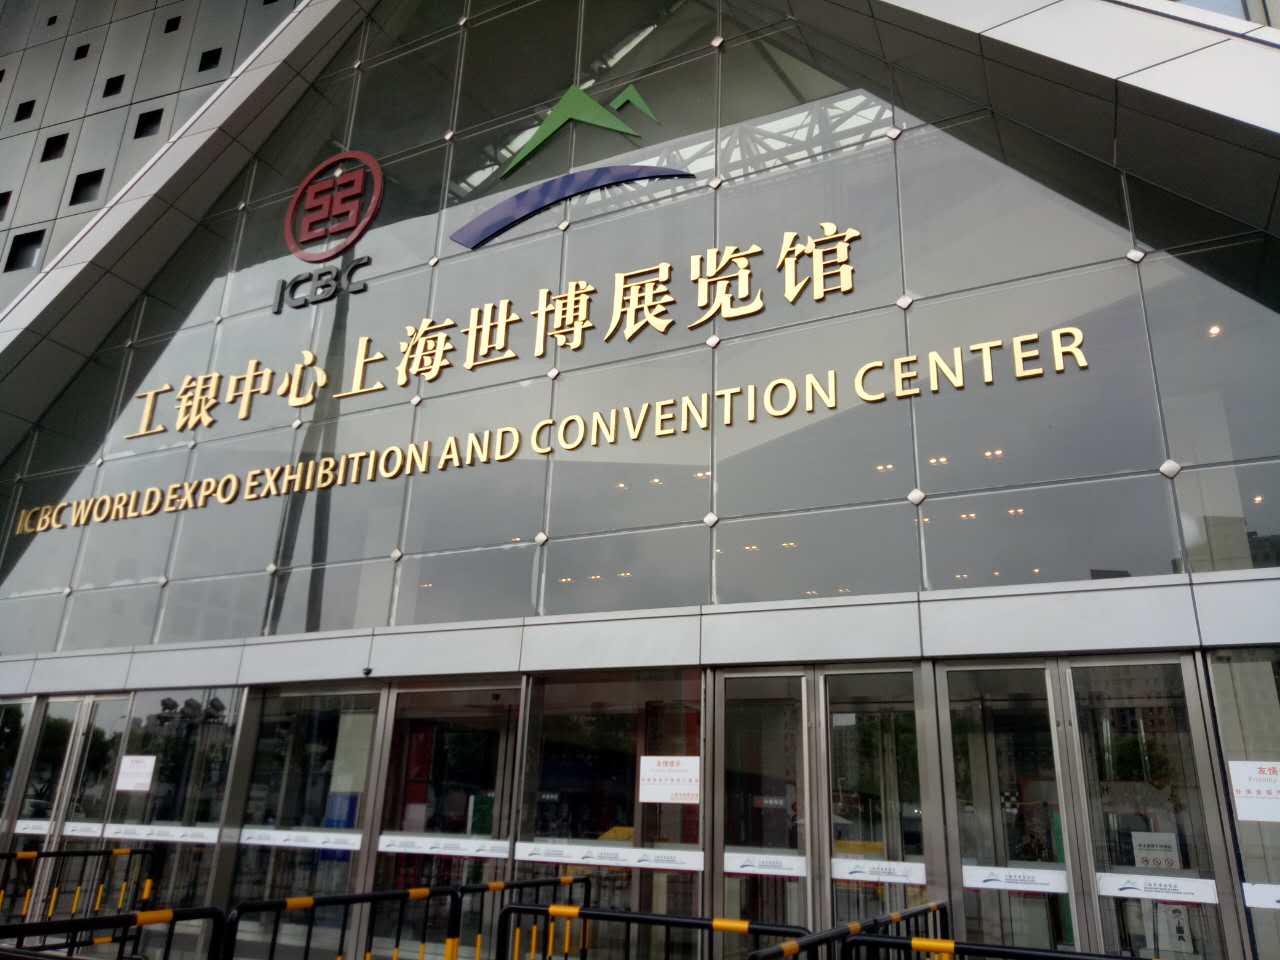 工银中心上海世博展览馆调光玻璃案例分享